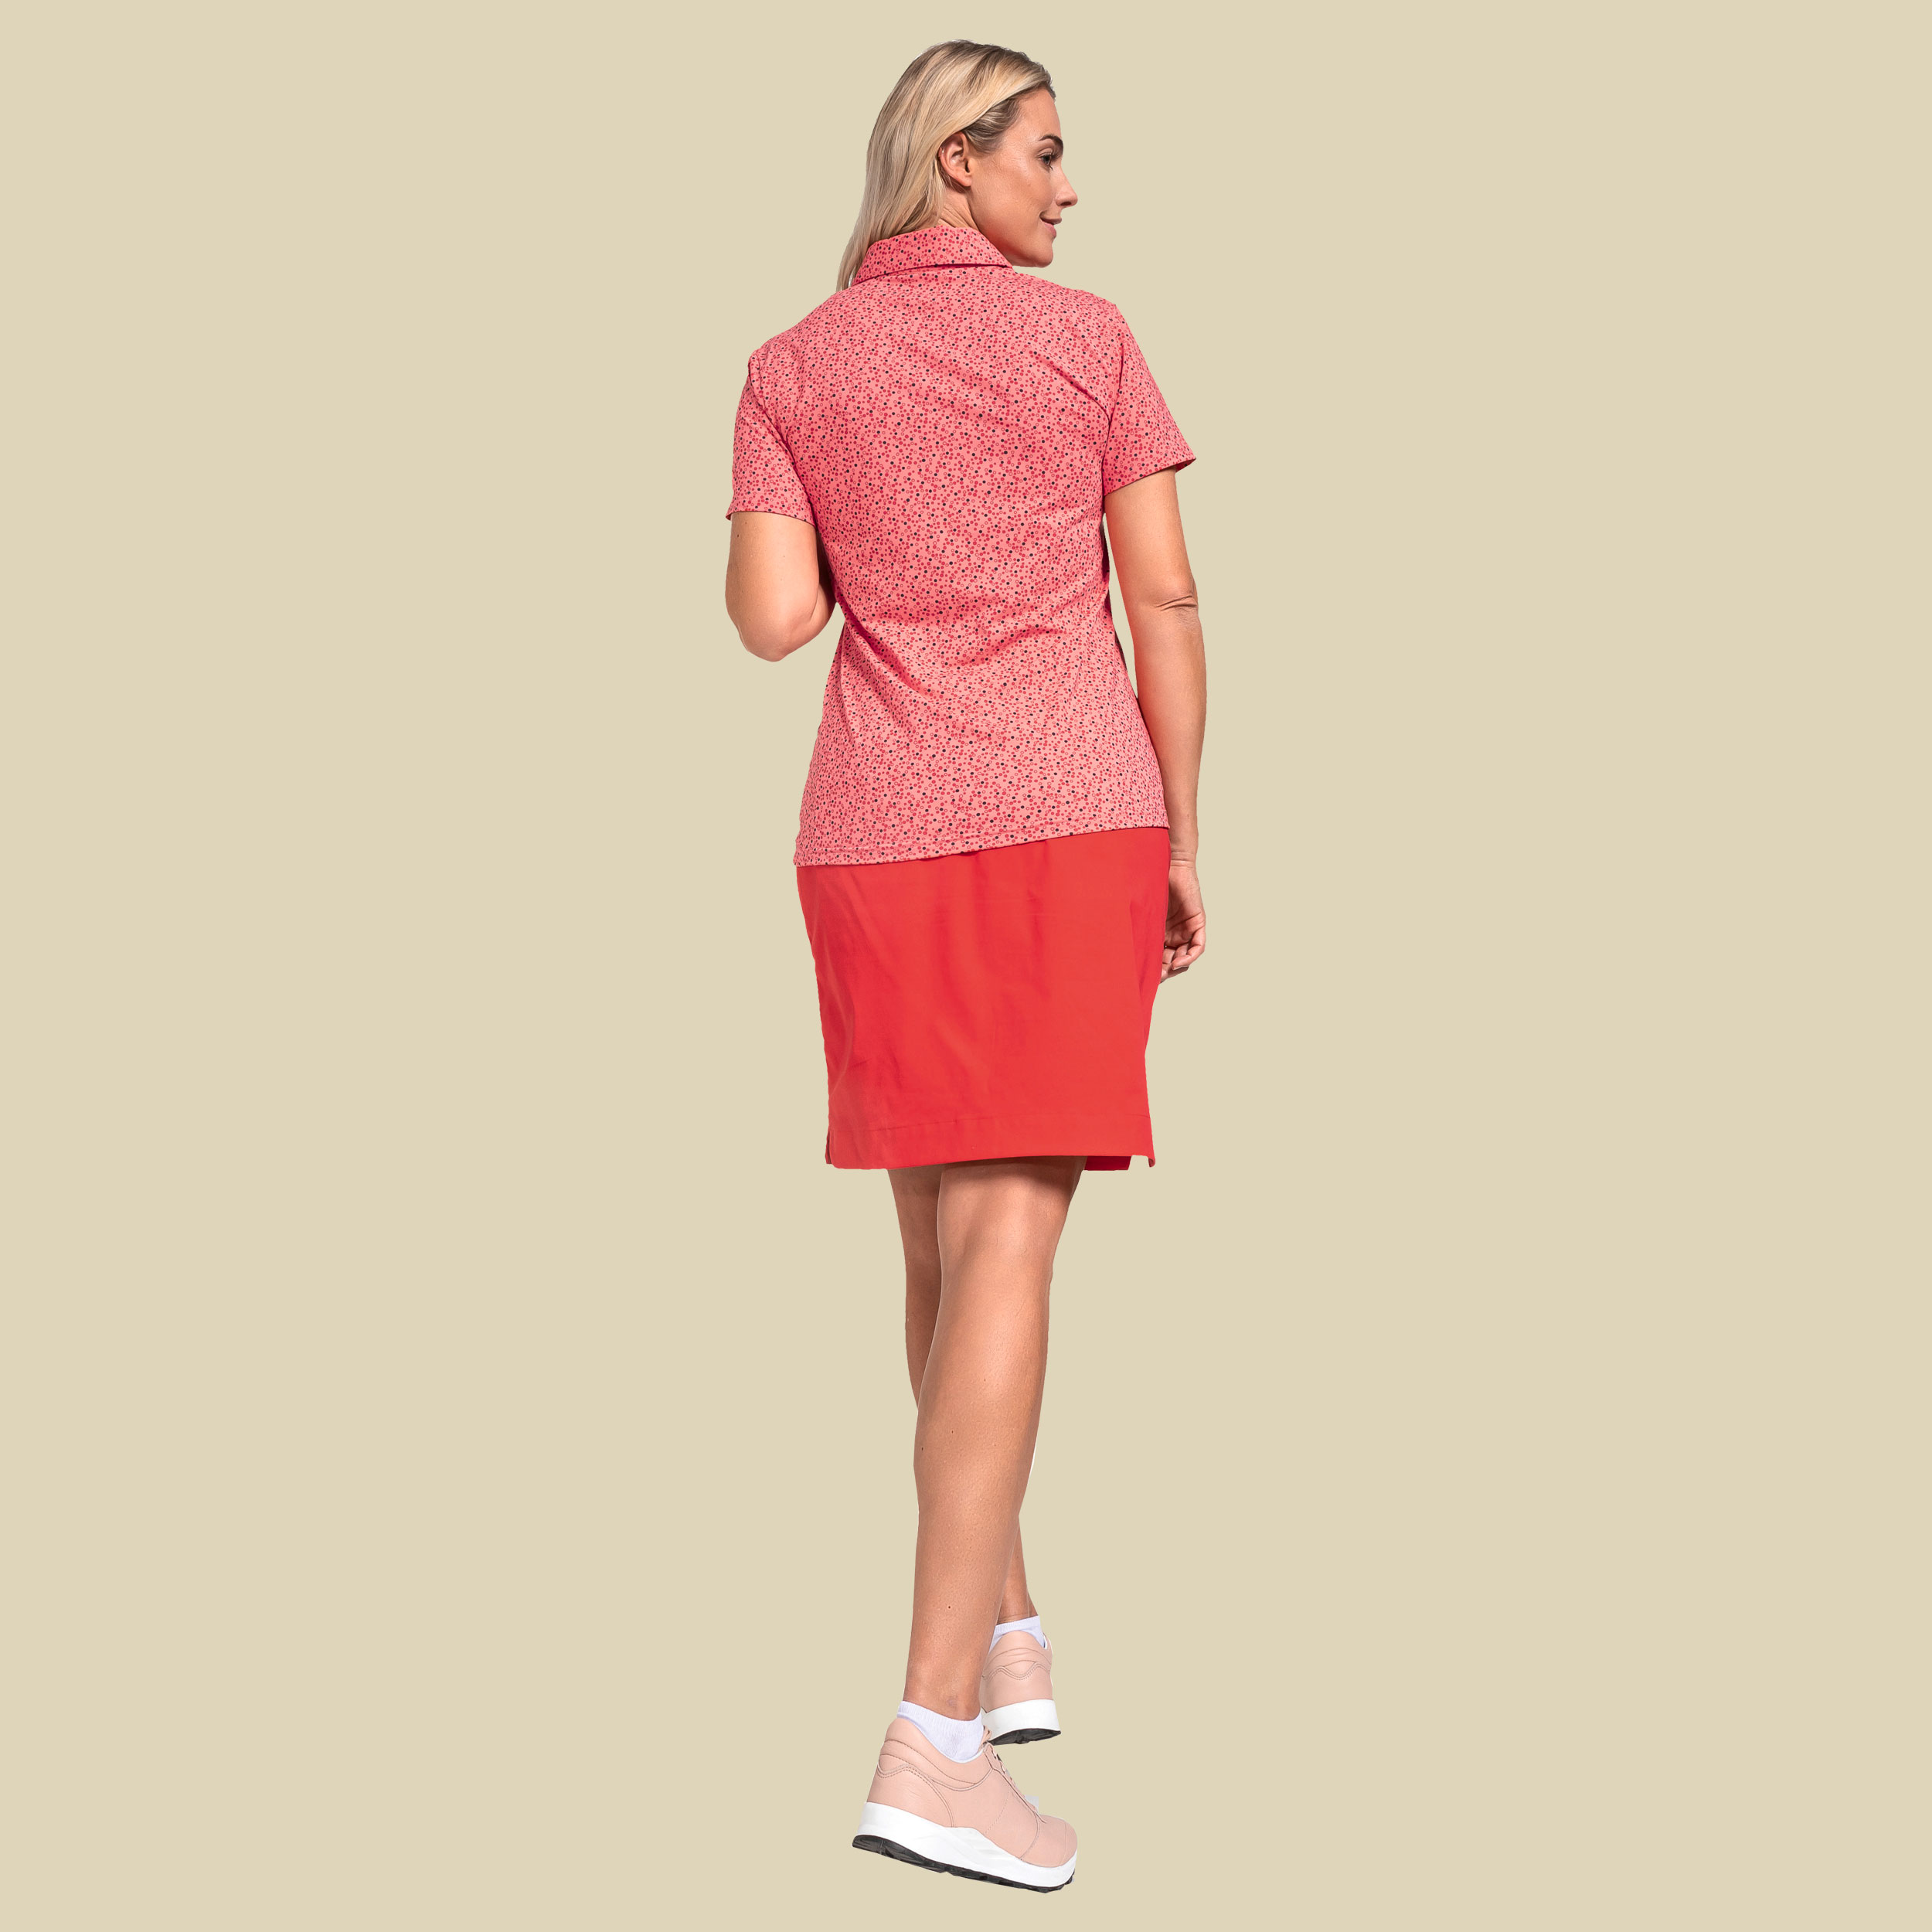 Polo Shirt Stintino Lady Größe 36 Farbe georgia peach